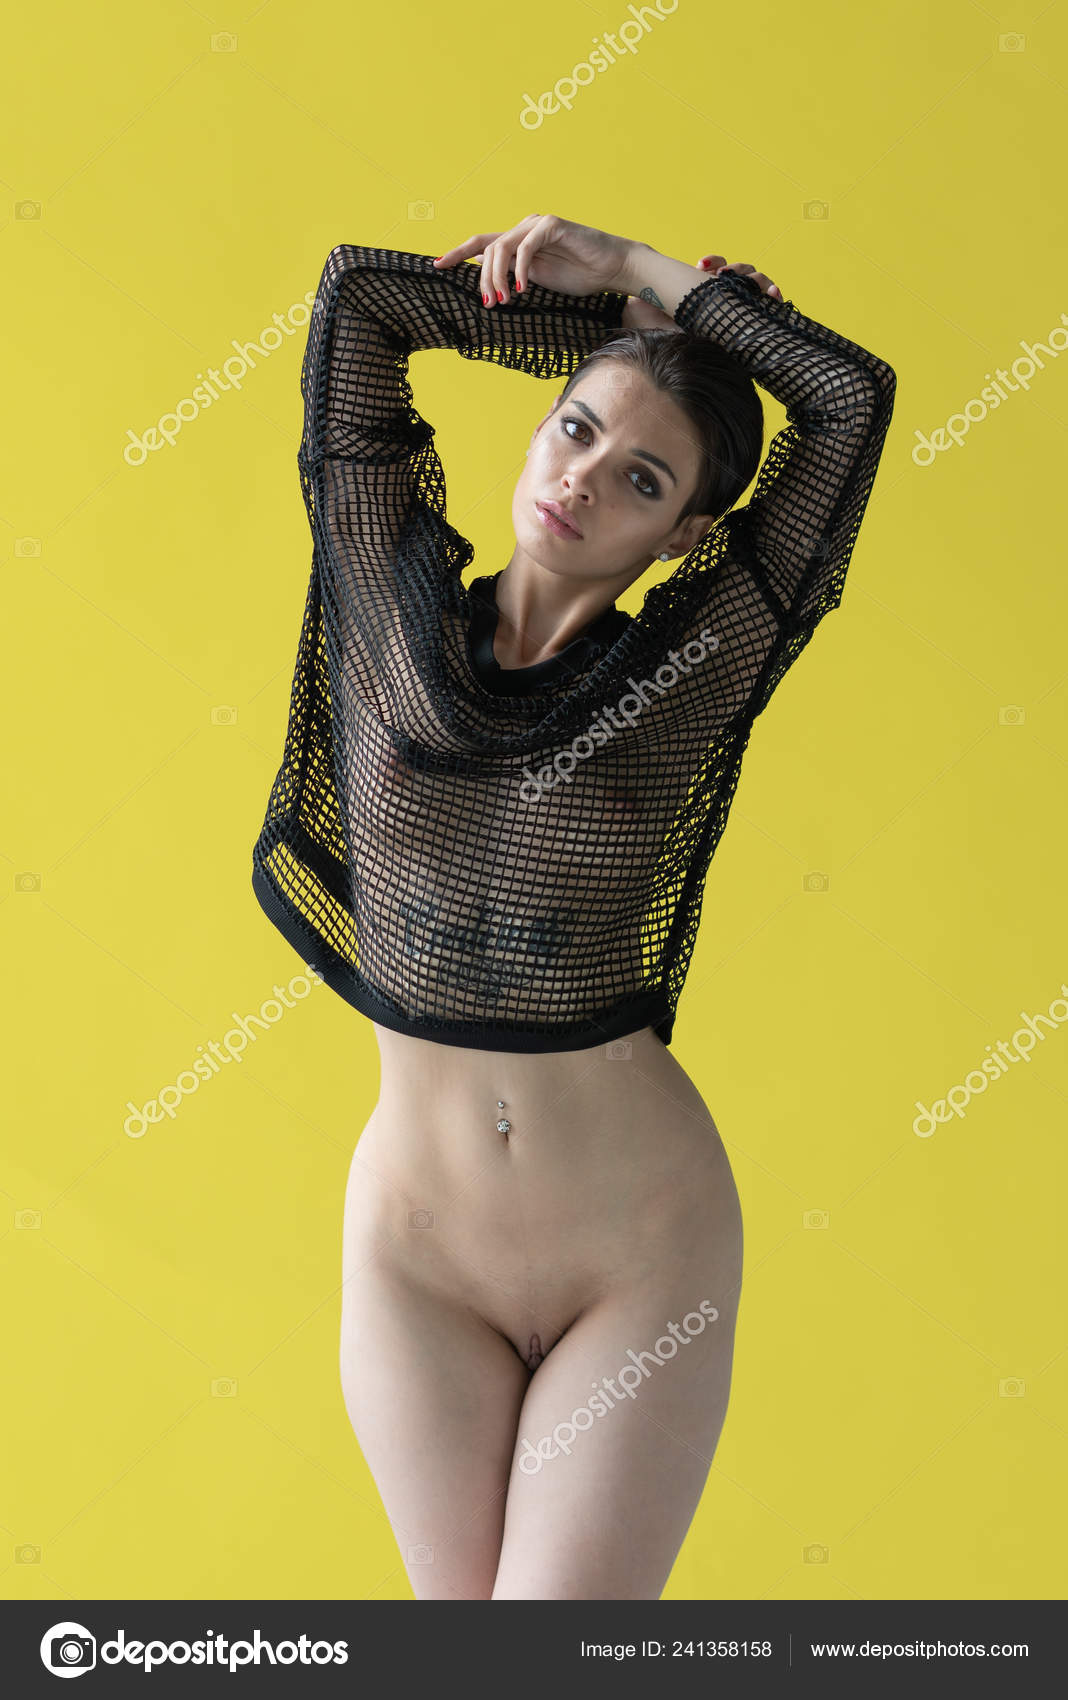 https://st4n.depositphotos.com/10086424/24135/i/1600/depositphotos_241358158-stock-photo-young-beautiful-girl-posing-nude.jpg